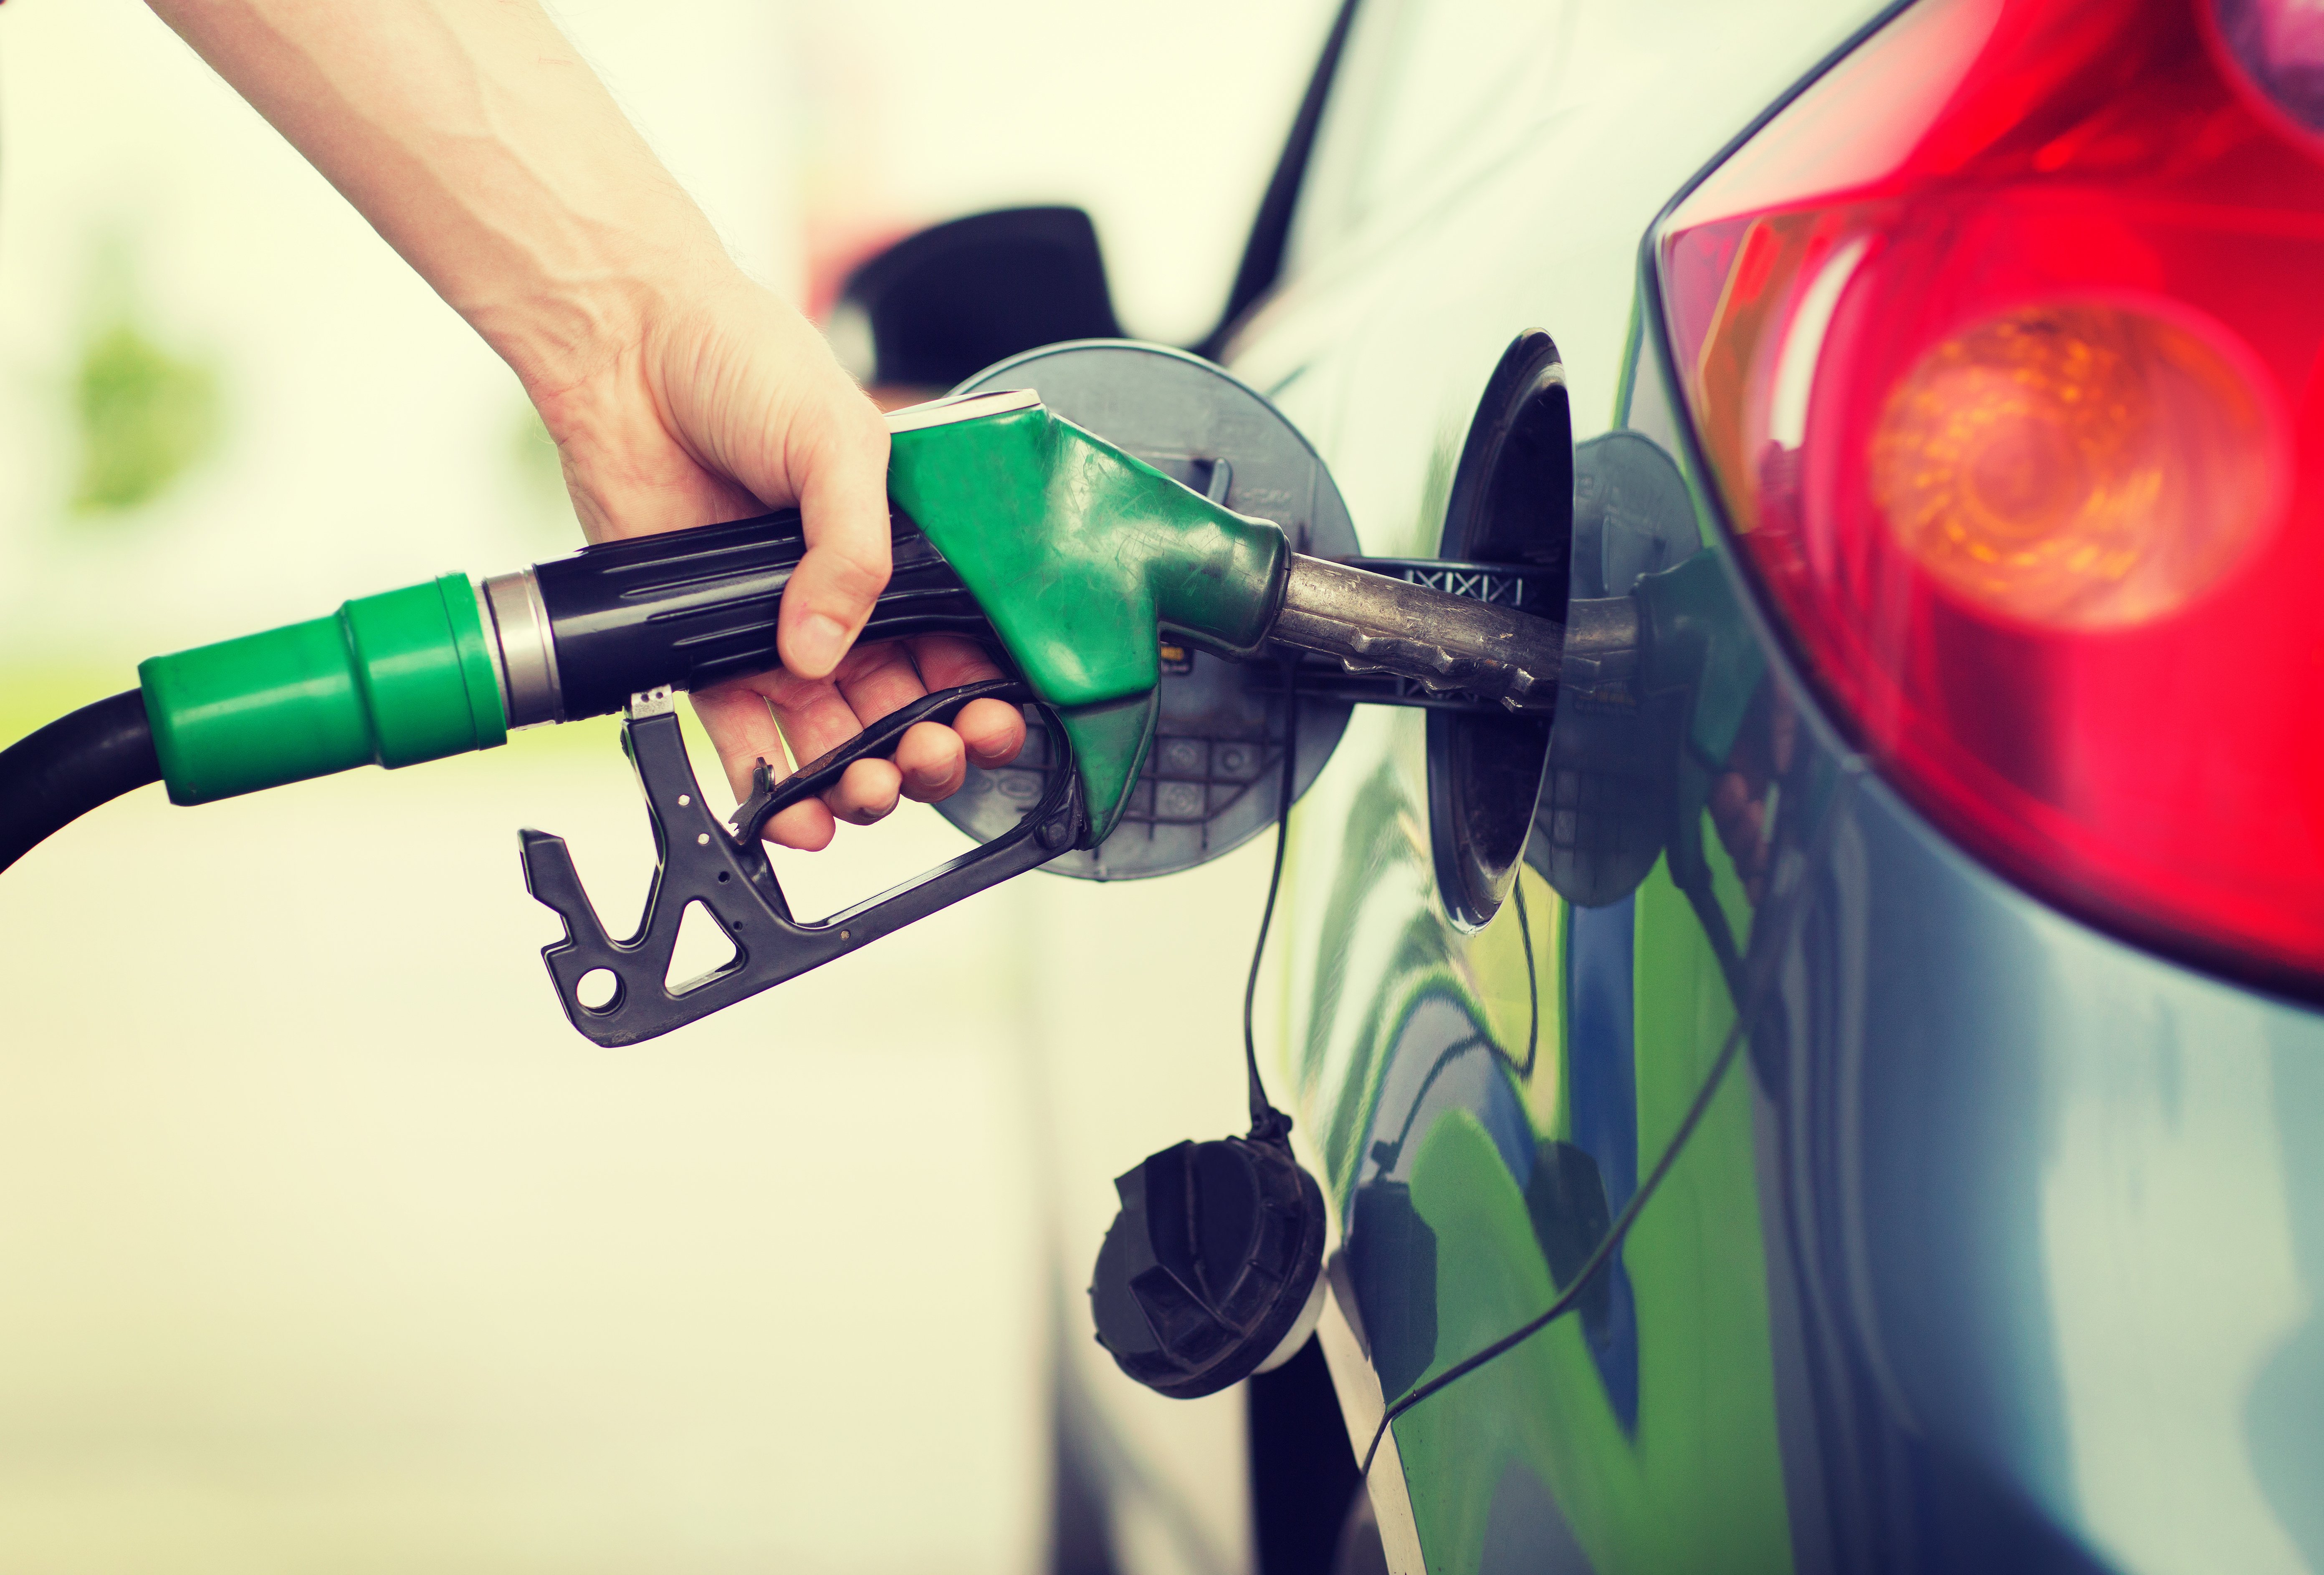 ΕΒΕΠ: Ο επιπλέον δημοσιονομικός χώρος τροφοδοτεί τις επιδοτήσεις στις τιμές των καυσίμων